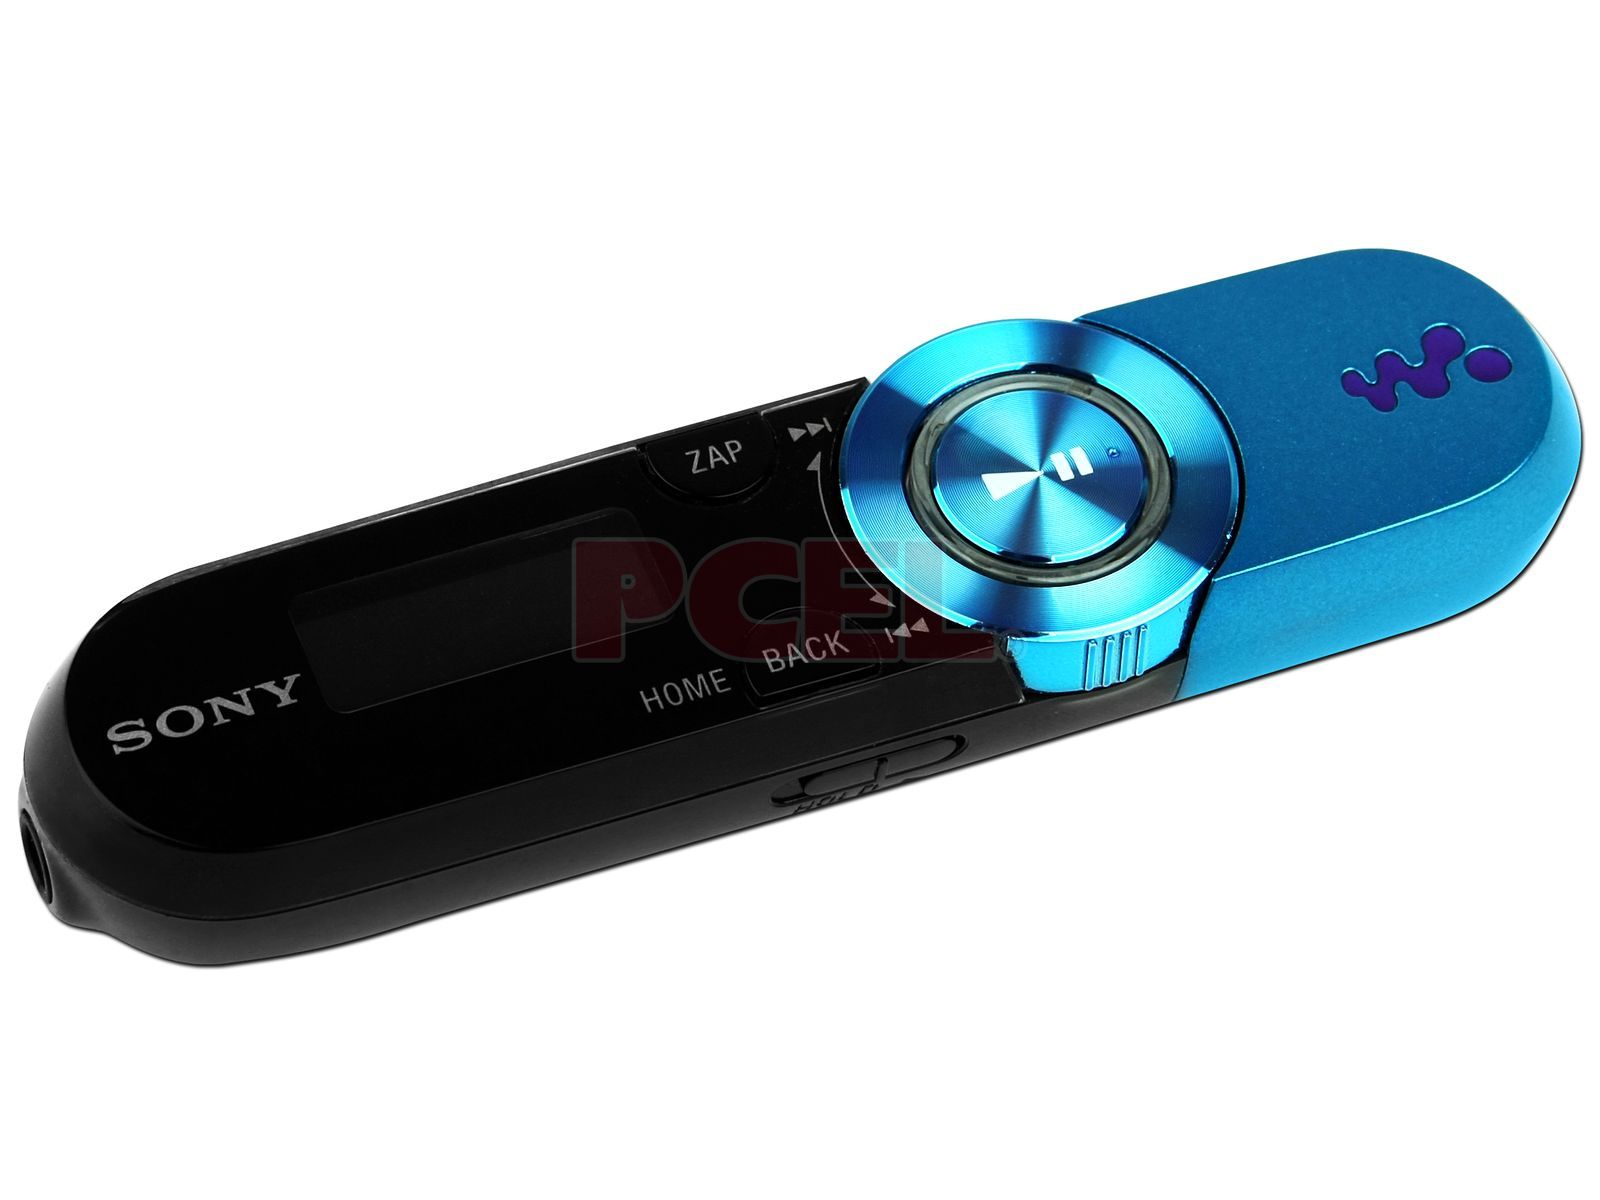 Sony Reproductor de MP3, Radio FM y Grabador de Voz. 4GB. Color Azul